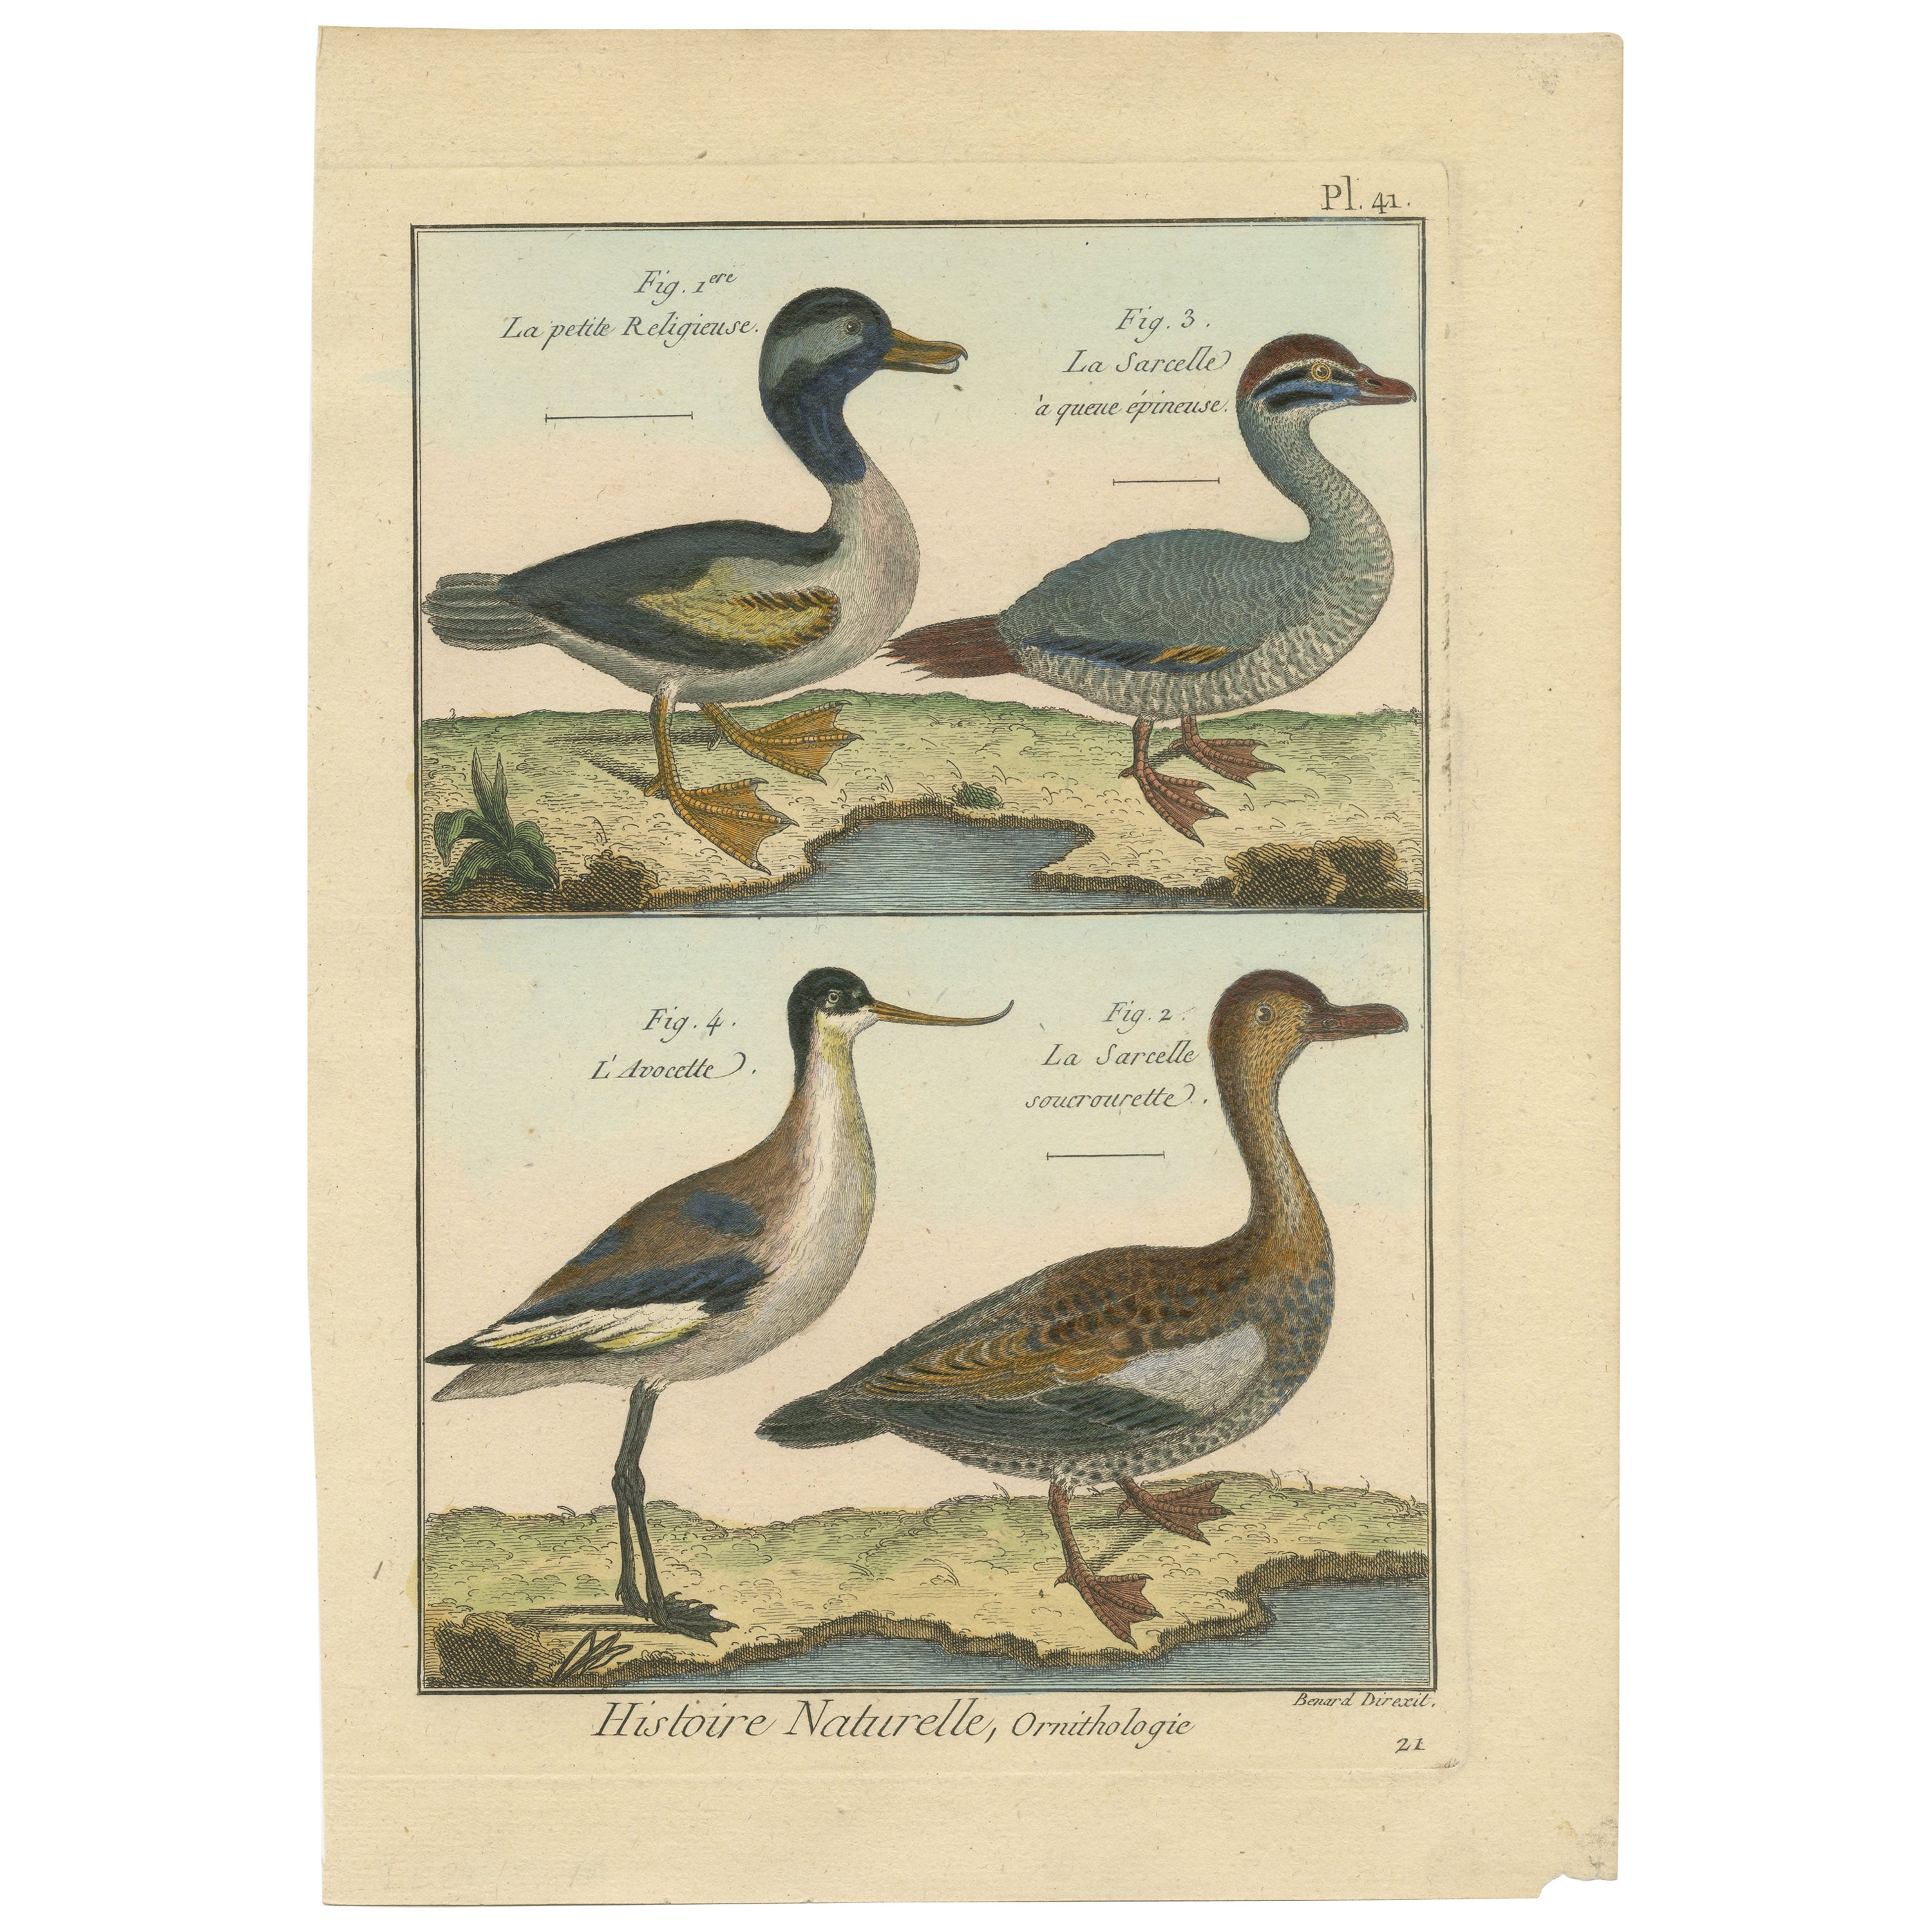 Handkolorierte, seltene Kupfergravur von 3 Enten und einem Avocet (1792).